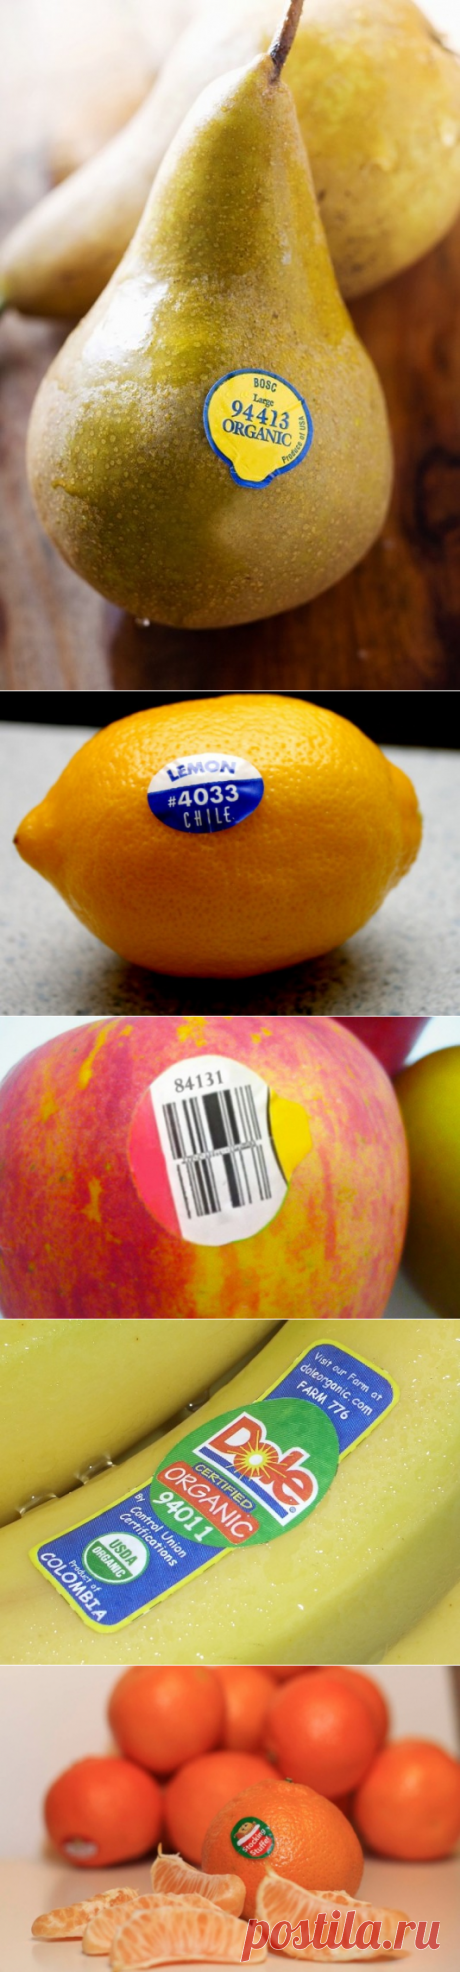 ​Знаете ли вы, что означают эти наклейки на фруктах? — Полезные советы